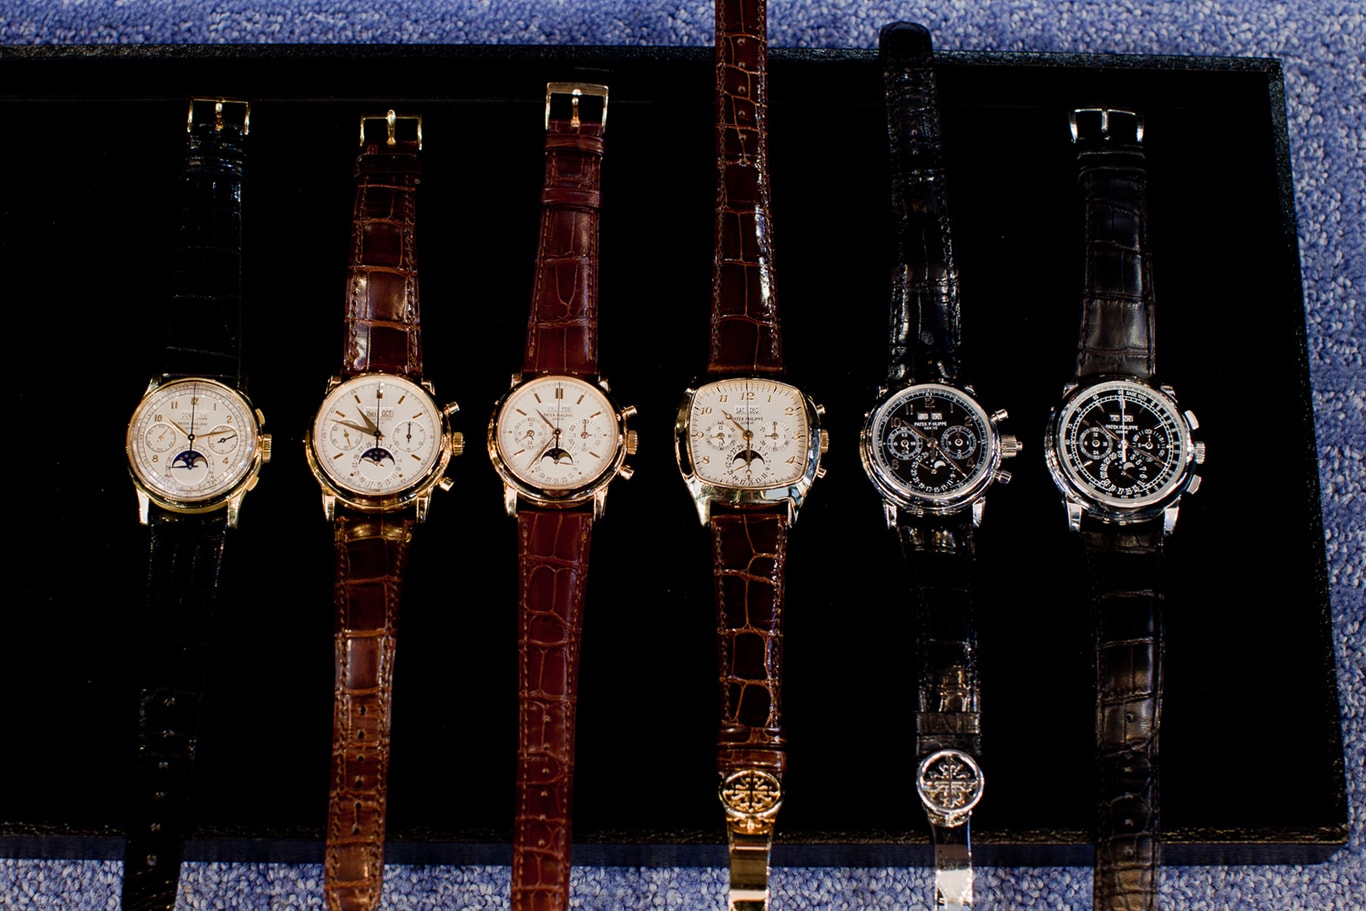 Tổng hợp: Dòng sự kiện những chiếc đồng hồ Patek Philippe với chức năng phức tạp - Lịch vạn niên kết hợp Chronograph (Phần 1)